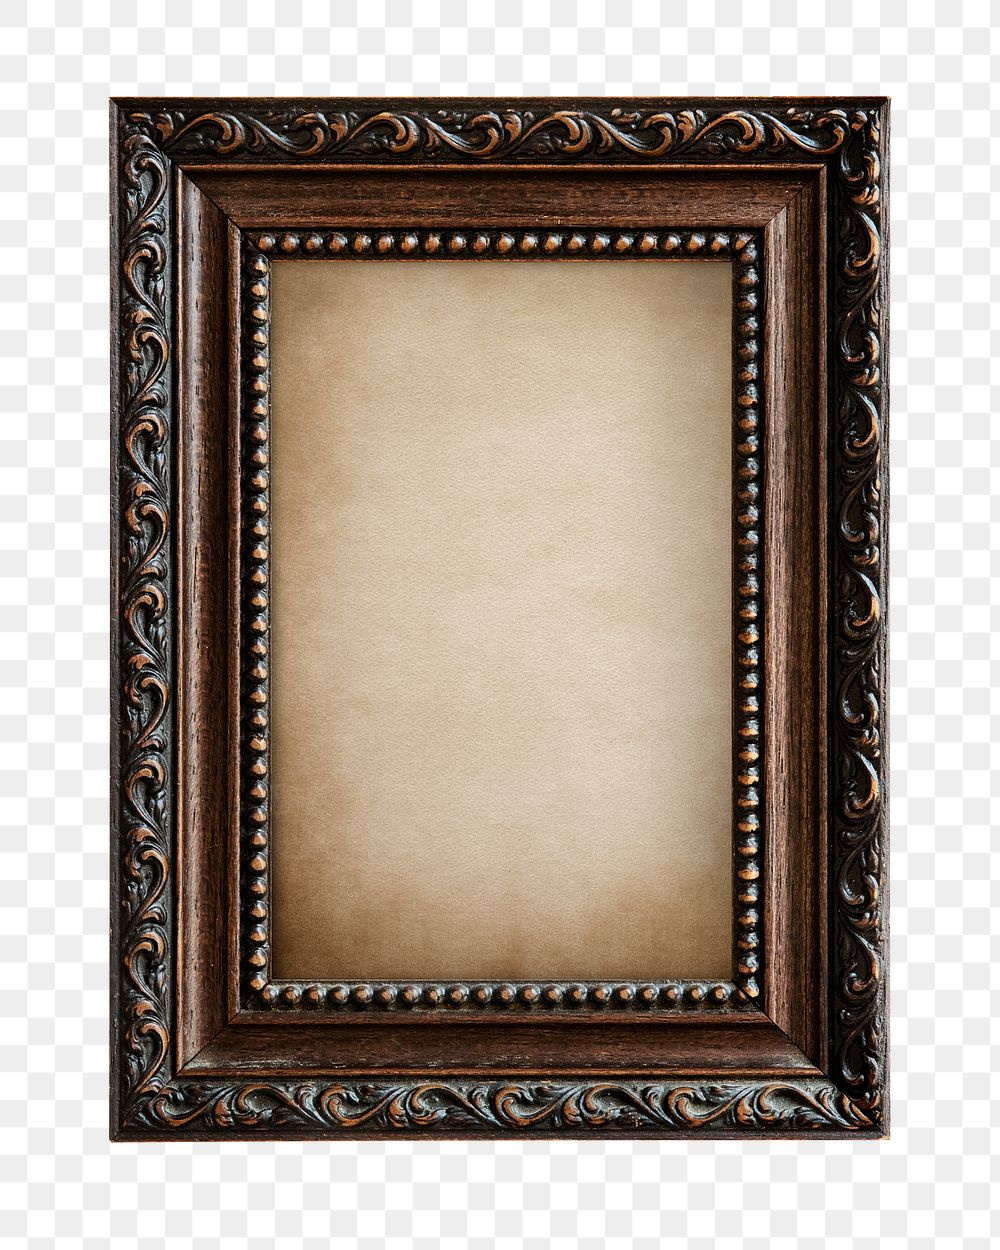 Vintage frame png, transparent background